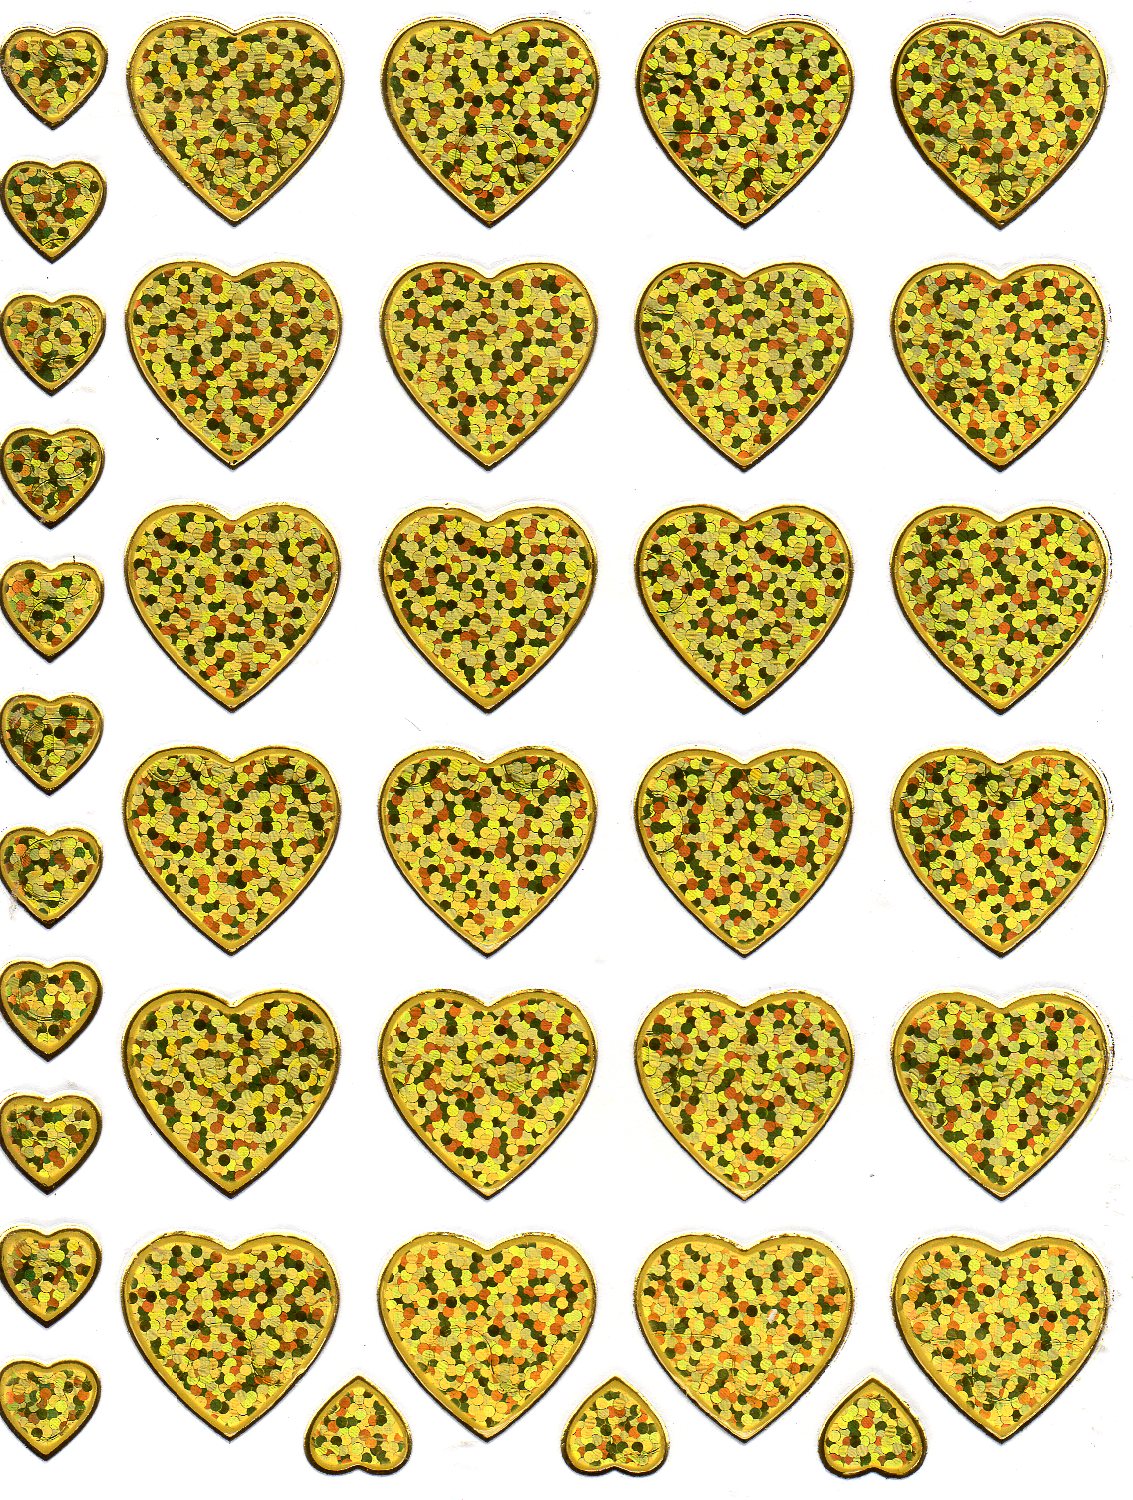 Heart Hearts Gold Love Sticker Metallic Glitter Effect for Children Crafts Kindergarten 1 sheet 174